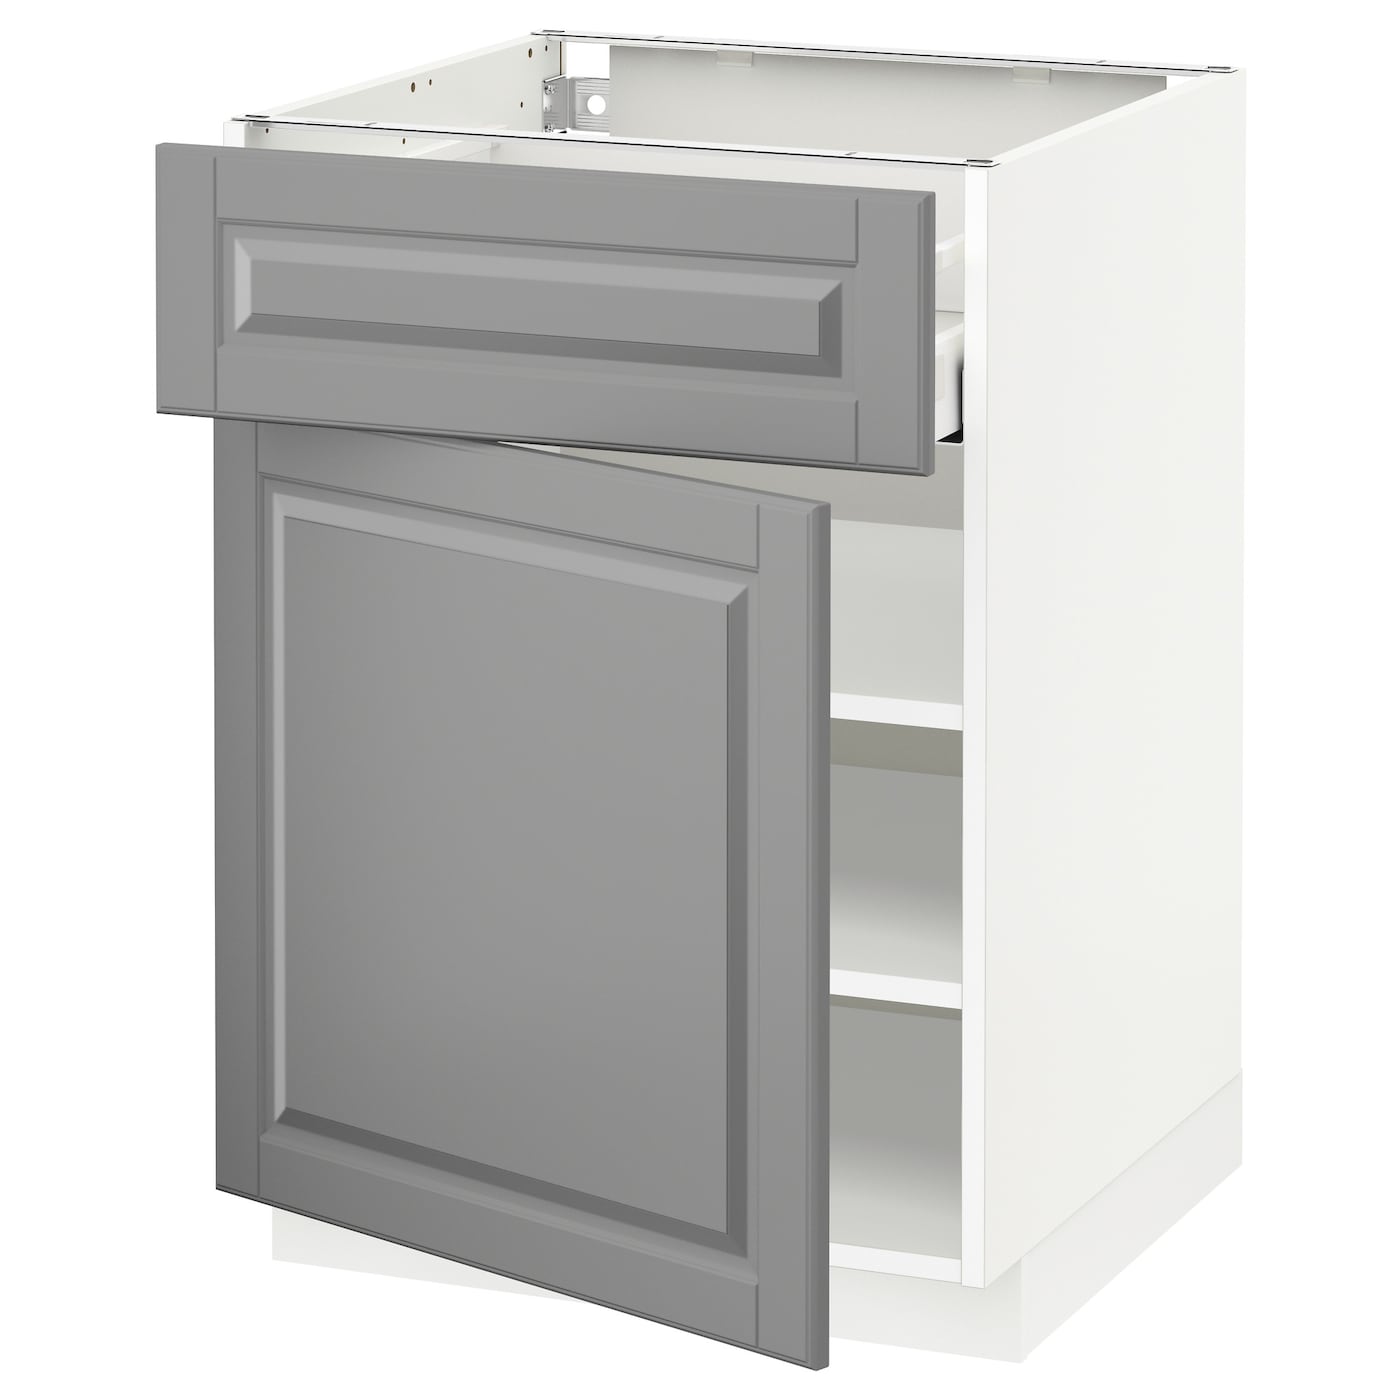 Напольный кухонный шкаф  - IKEA METOD MAXIMERA, 88x39,5x60см, белый/серый, МЕТОД МАКСИМЕРА ИКЕА